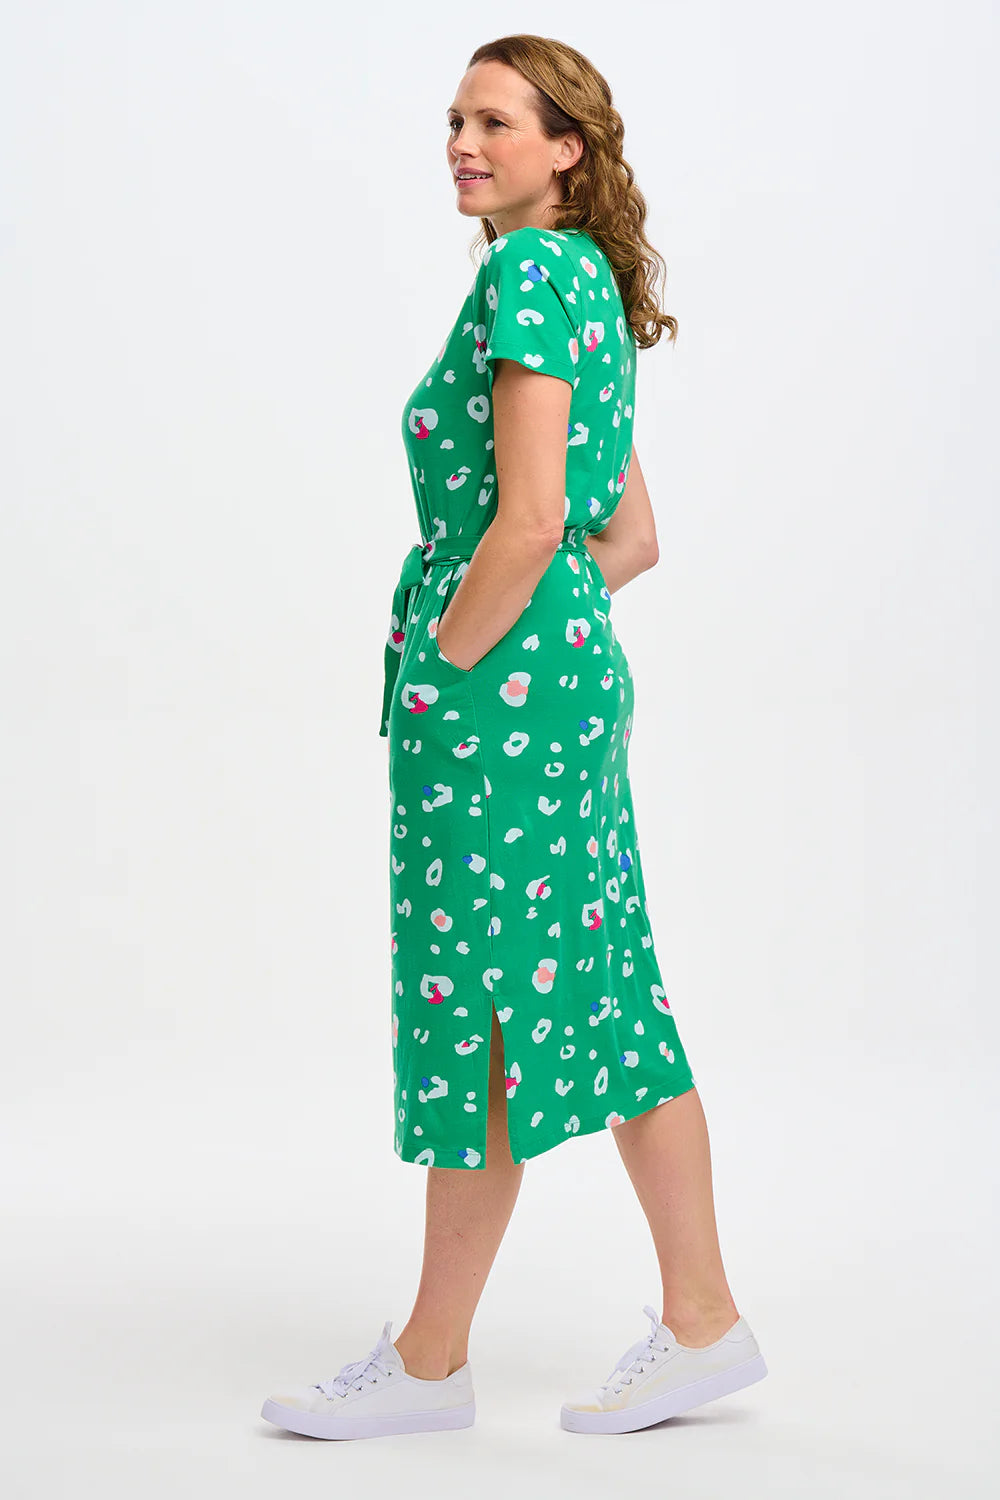 FLISSY GREEN LEOPARD DRESS